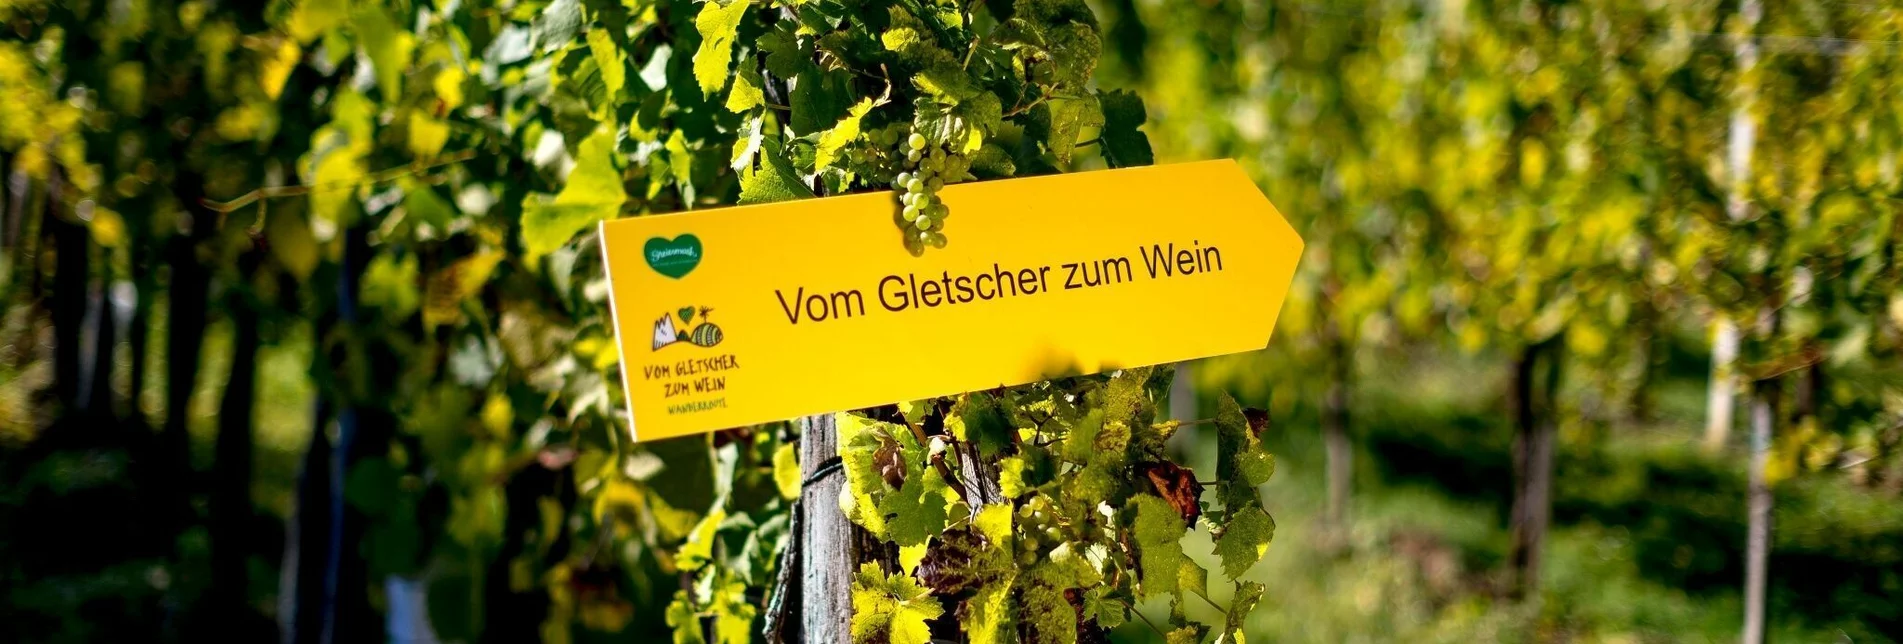 Wanderung Vom Gletscher zum Wein (Teilstück) - Touren-Impression #1 | © Steiermark Tourismus